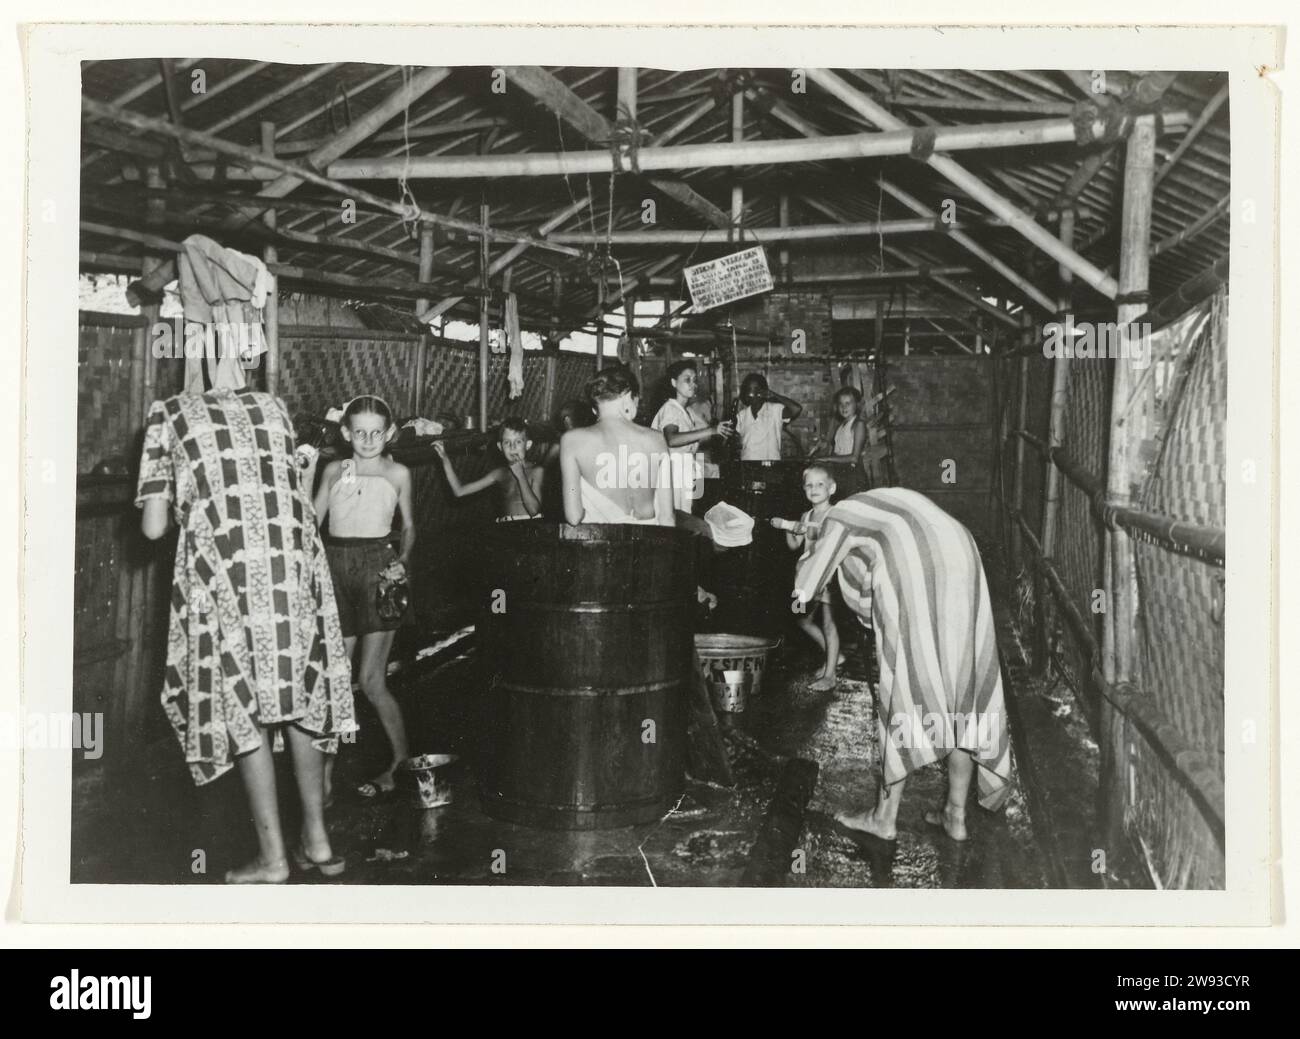 Wasplaats des Internierungslagers in Makassar, Anefo, 1945–1946 fotografieren nach der Befreiung die Waschküche des Internierungslagers in Makassar in Niederländisch-Indien. Während der japanischen Besatzung waren 10.000 Frauen und Mädchen in diesem Lager. Indonesien fotografische Unterstützung Makassar. Indonesien Stockfoto